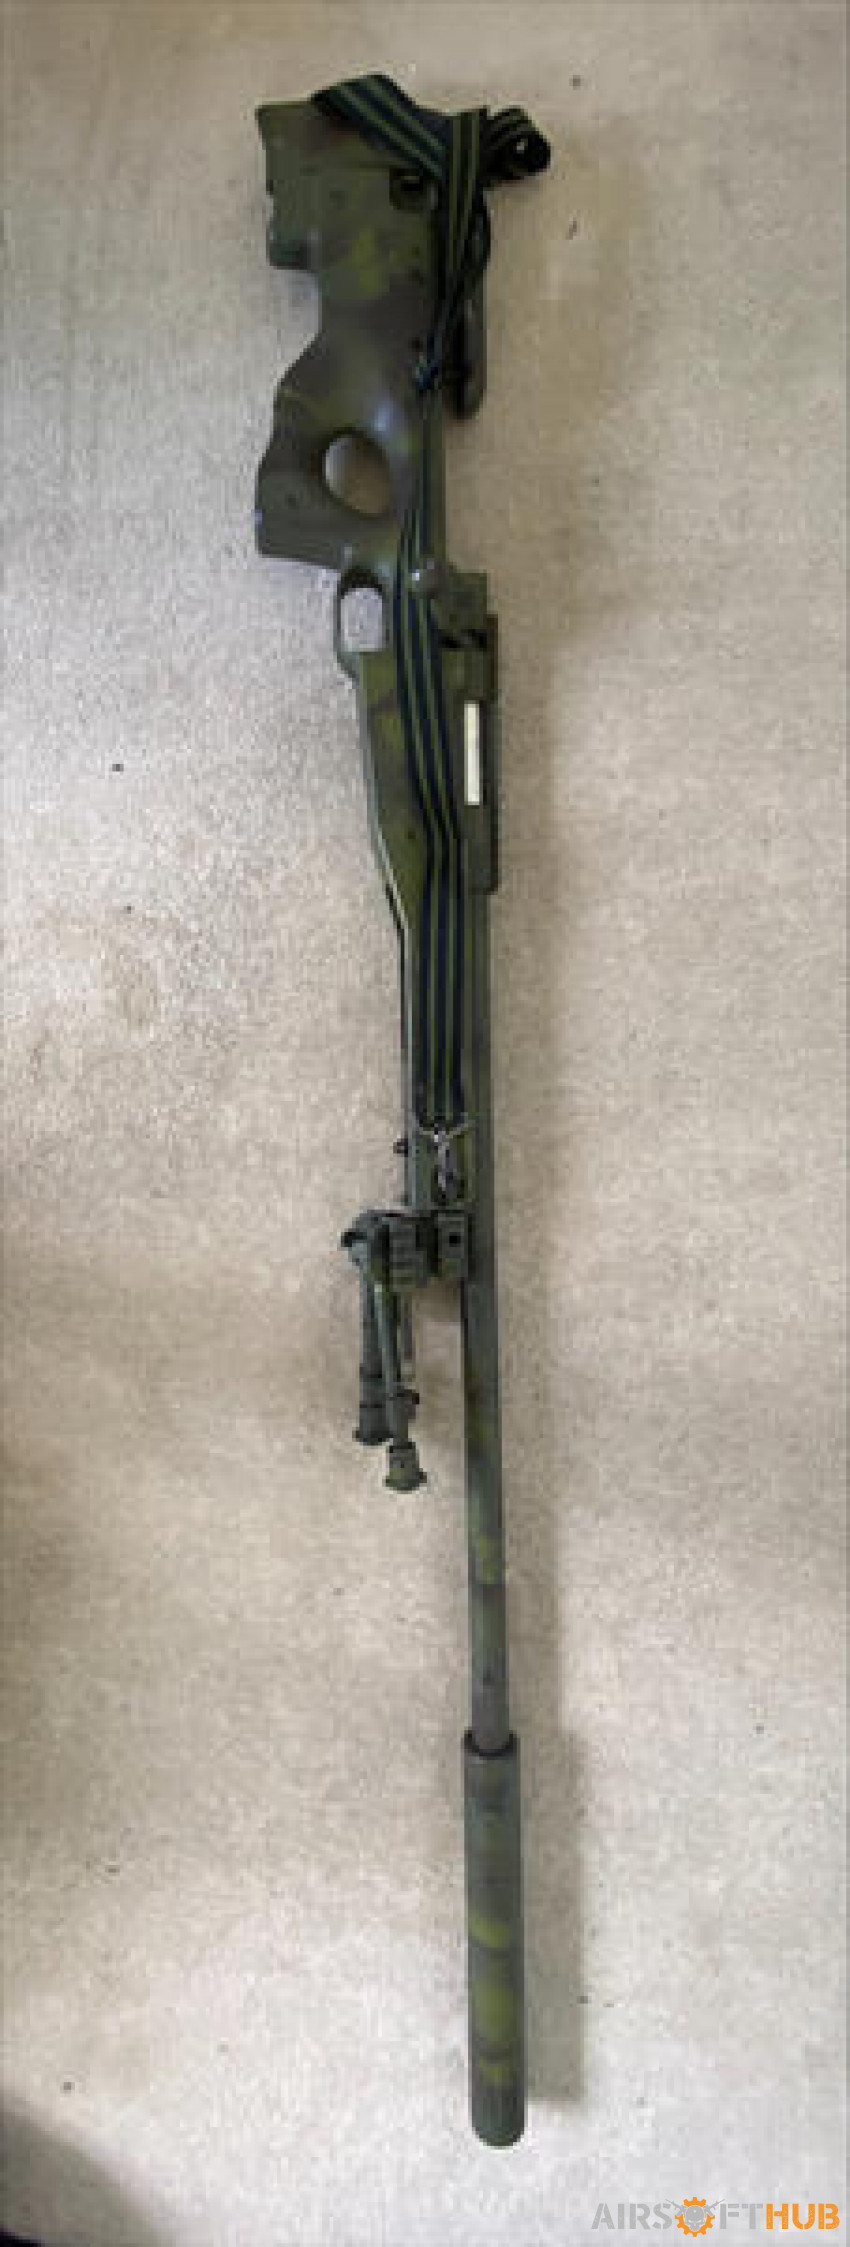 M16, M4, Draguno & Warrior L96 - Used airsoft equipment